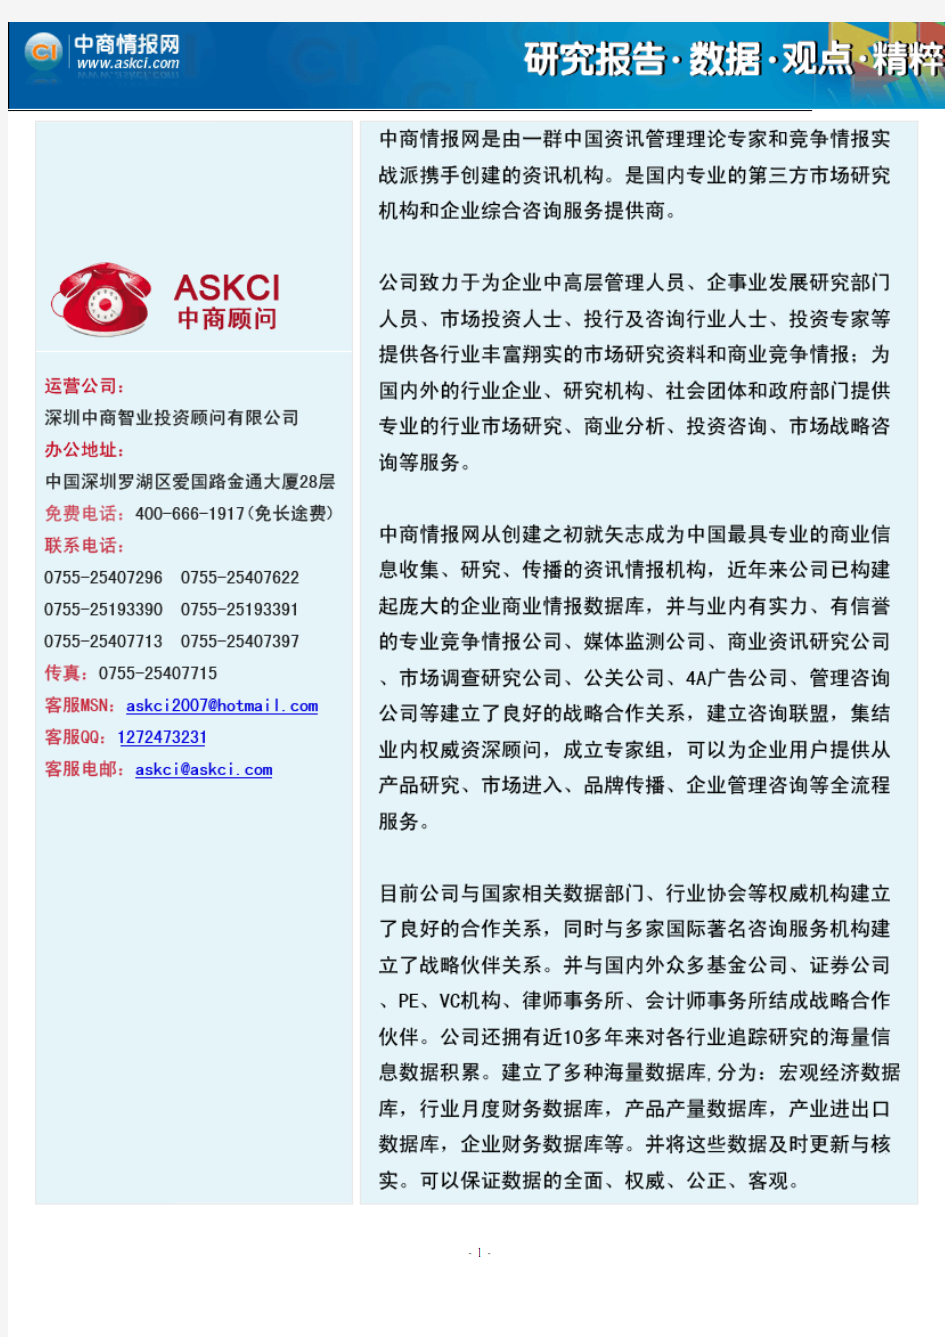 2011年中国房地产行业分析报告(7月)